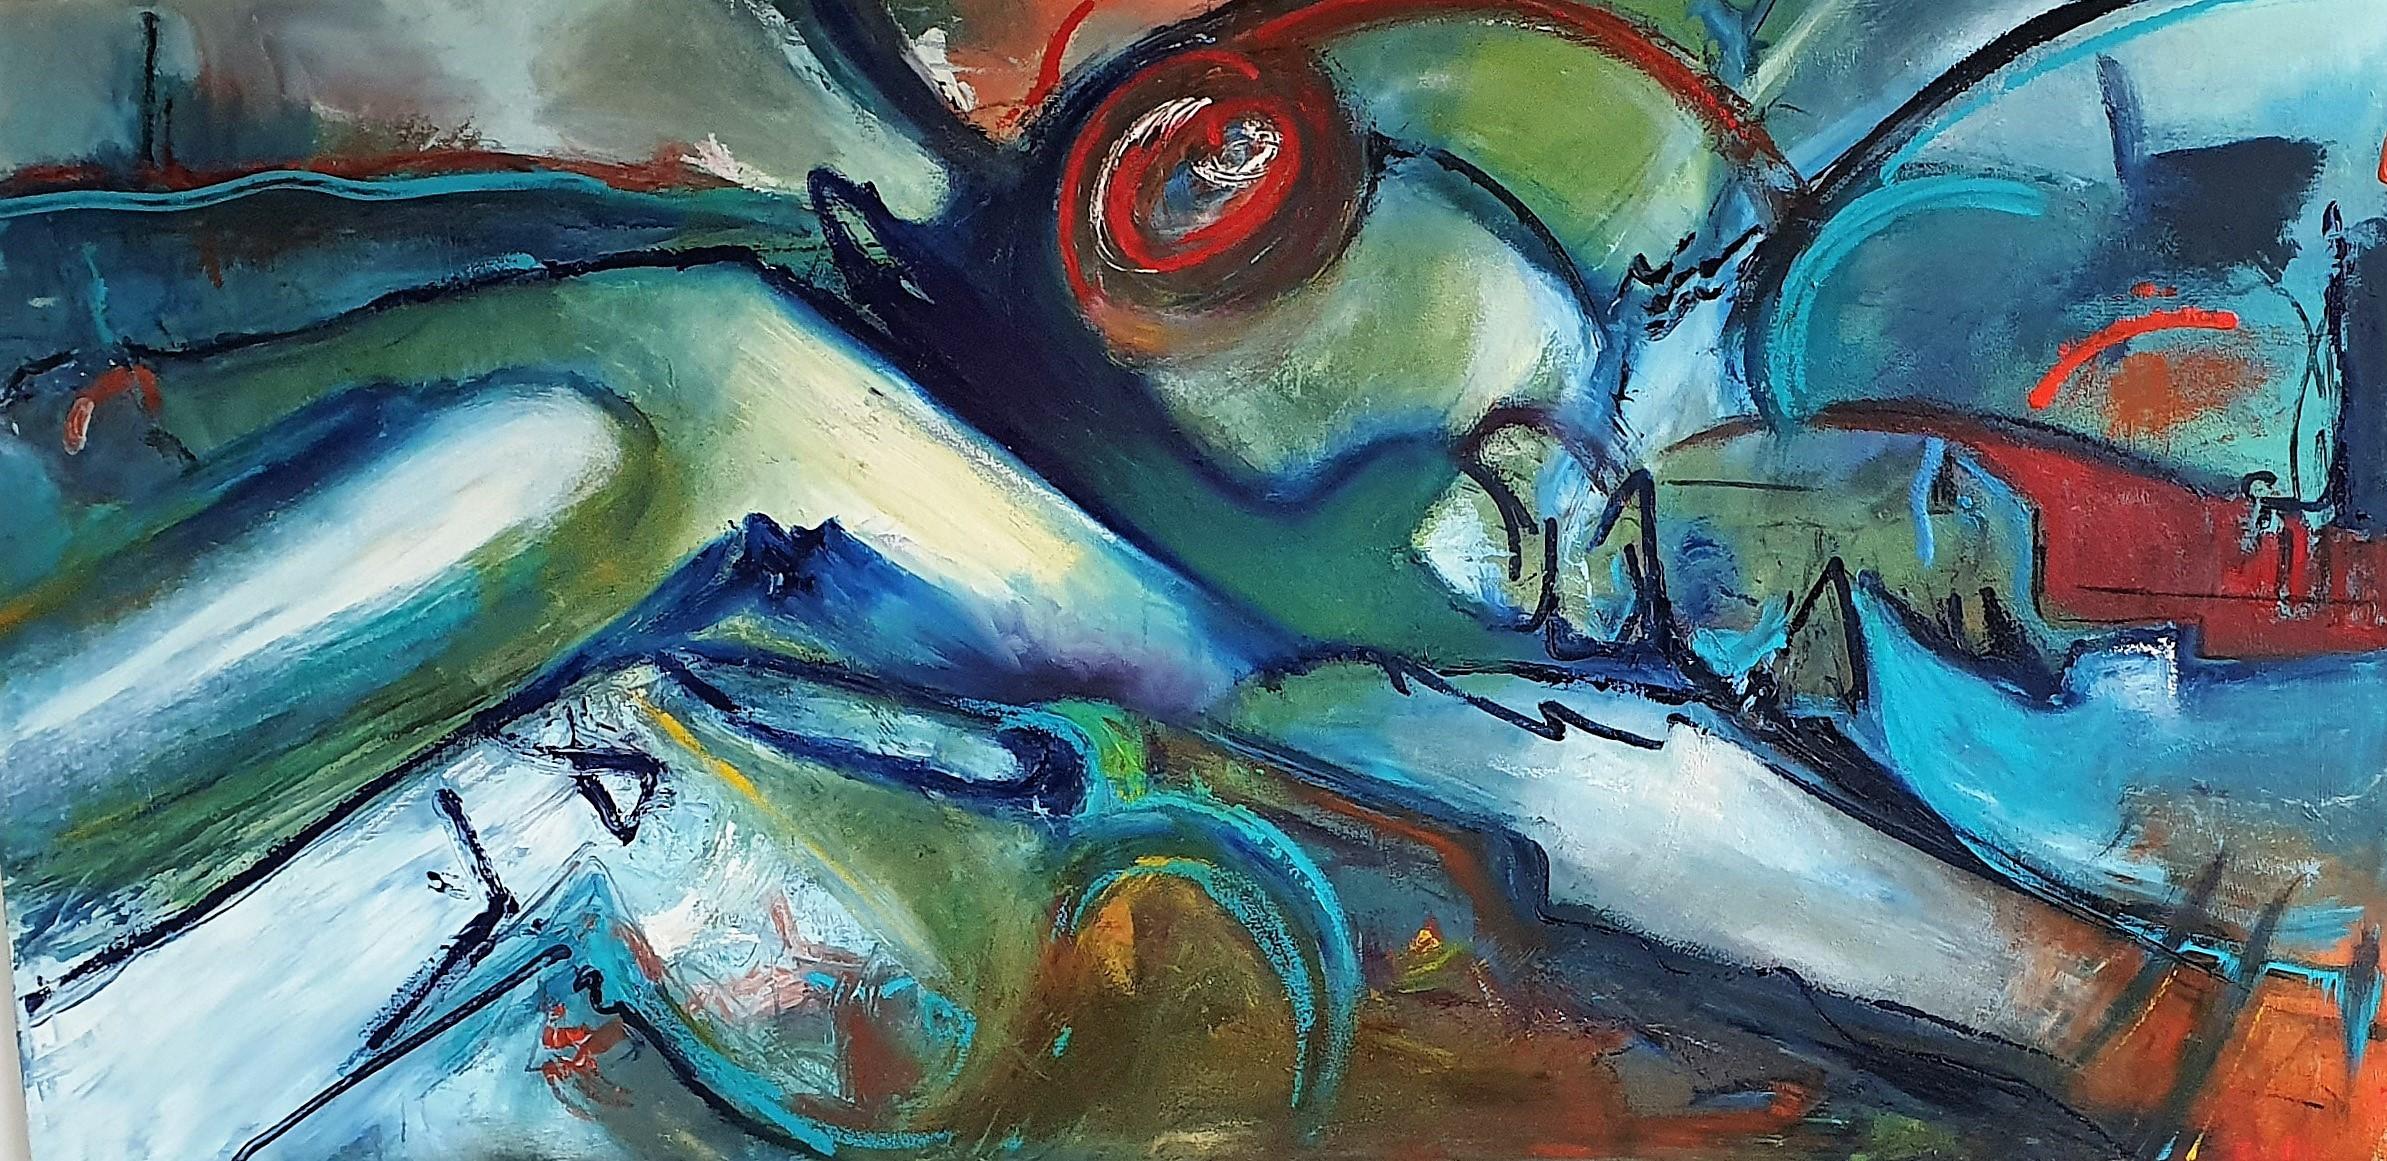 Abstract Painting Kate Bell - « Left From The Foam Bird Rising » (L'oiseau montant à gauche de la mousse). Peinture à l'huile abstraite contemporaine